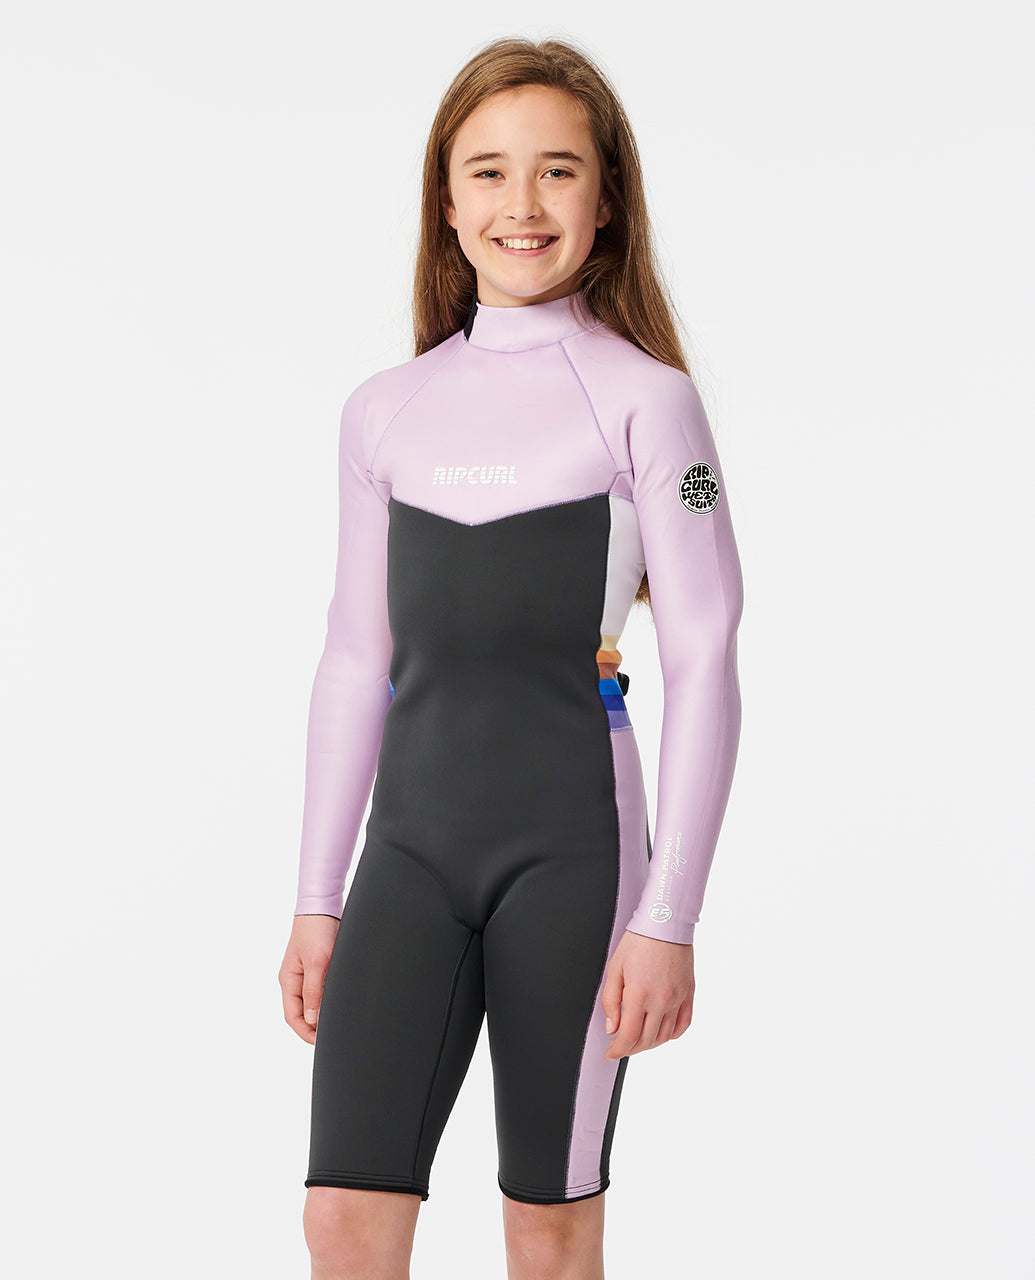 Girls Dawn Patrol Back Zip Long Sleeve Springsuit Kids Wetsuit - Purple